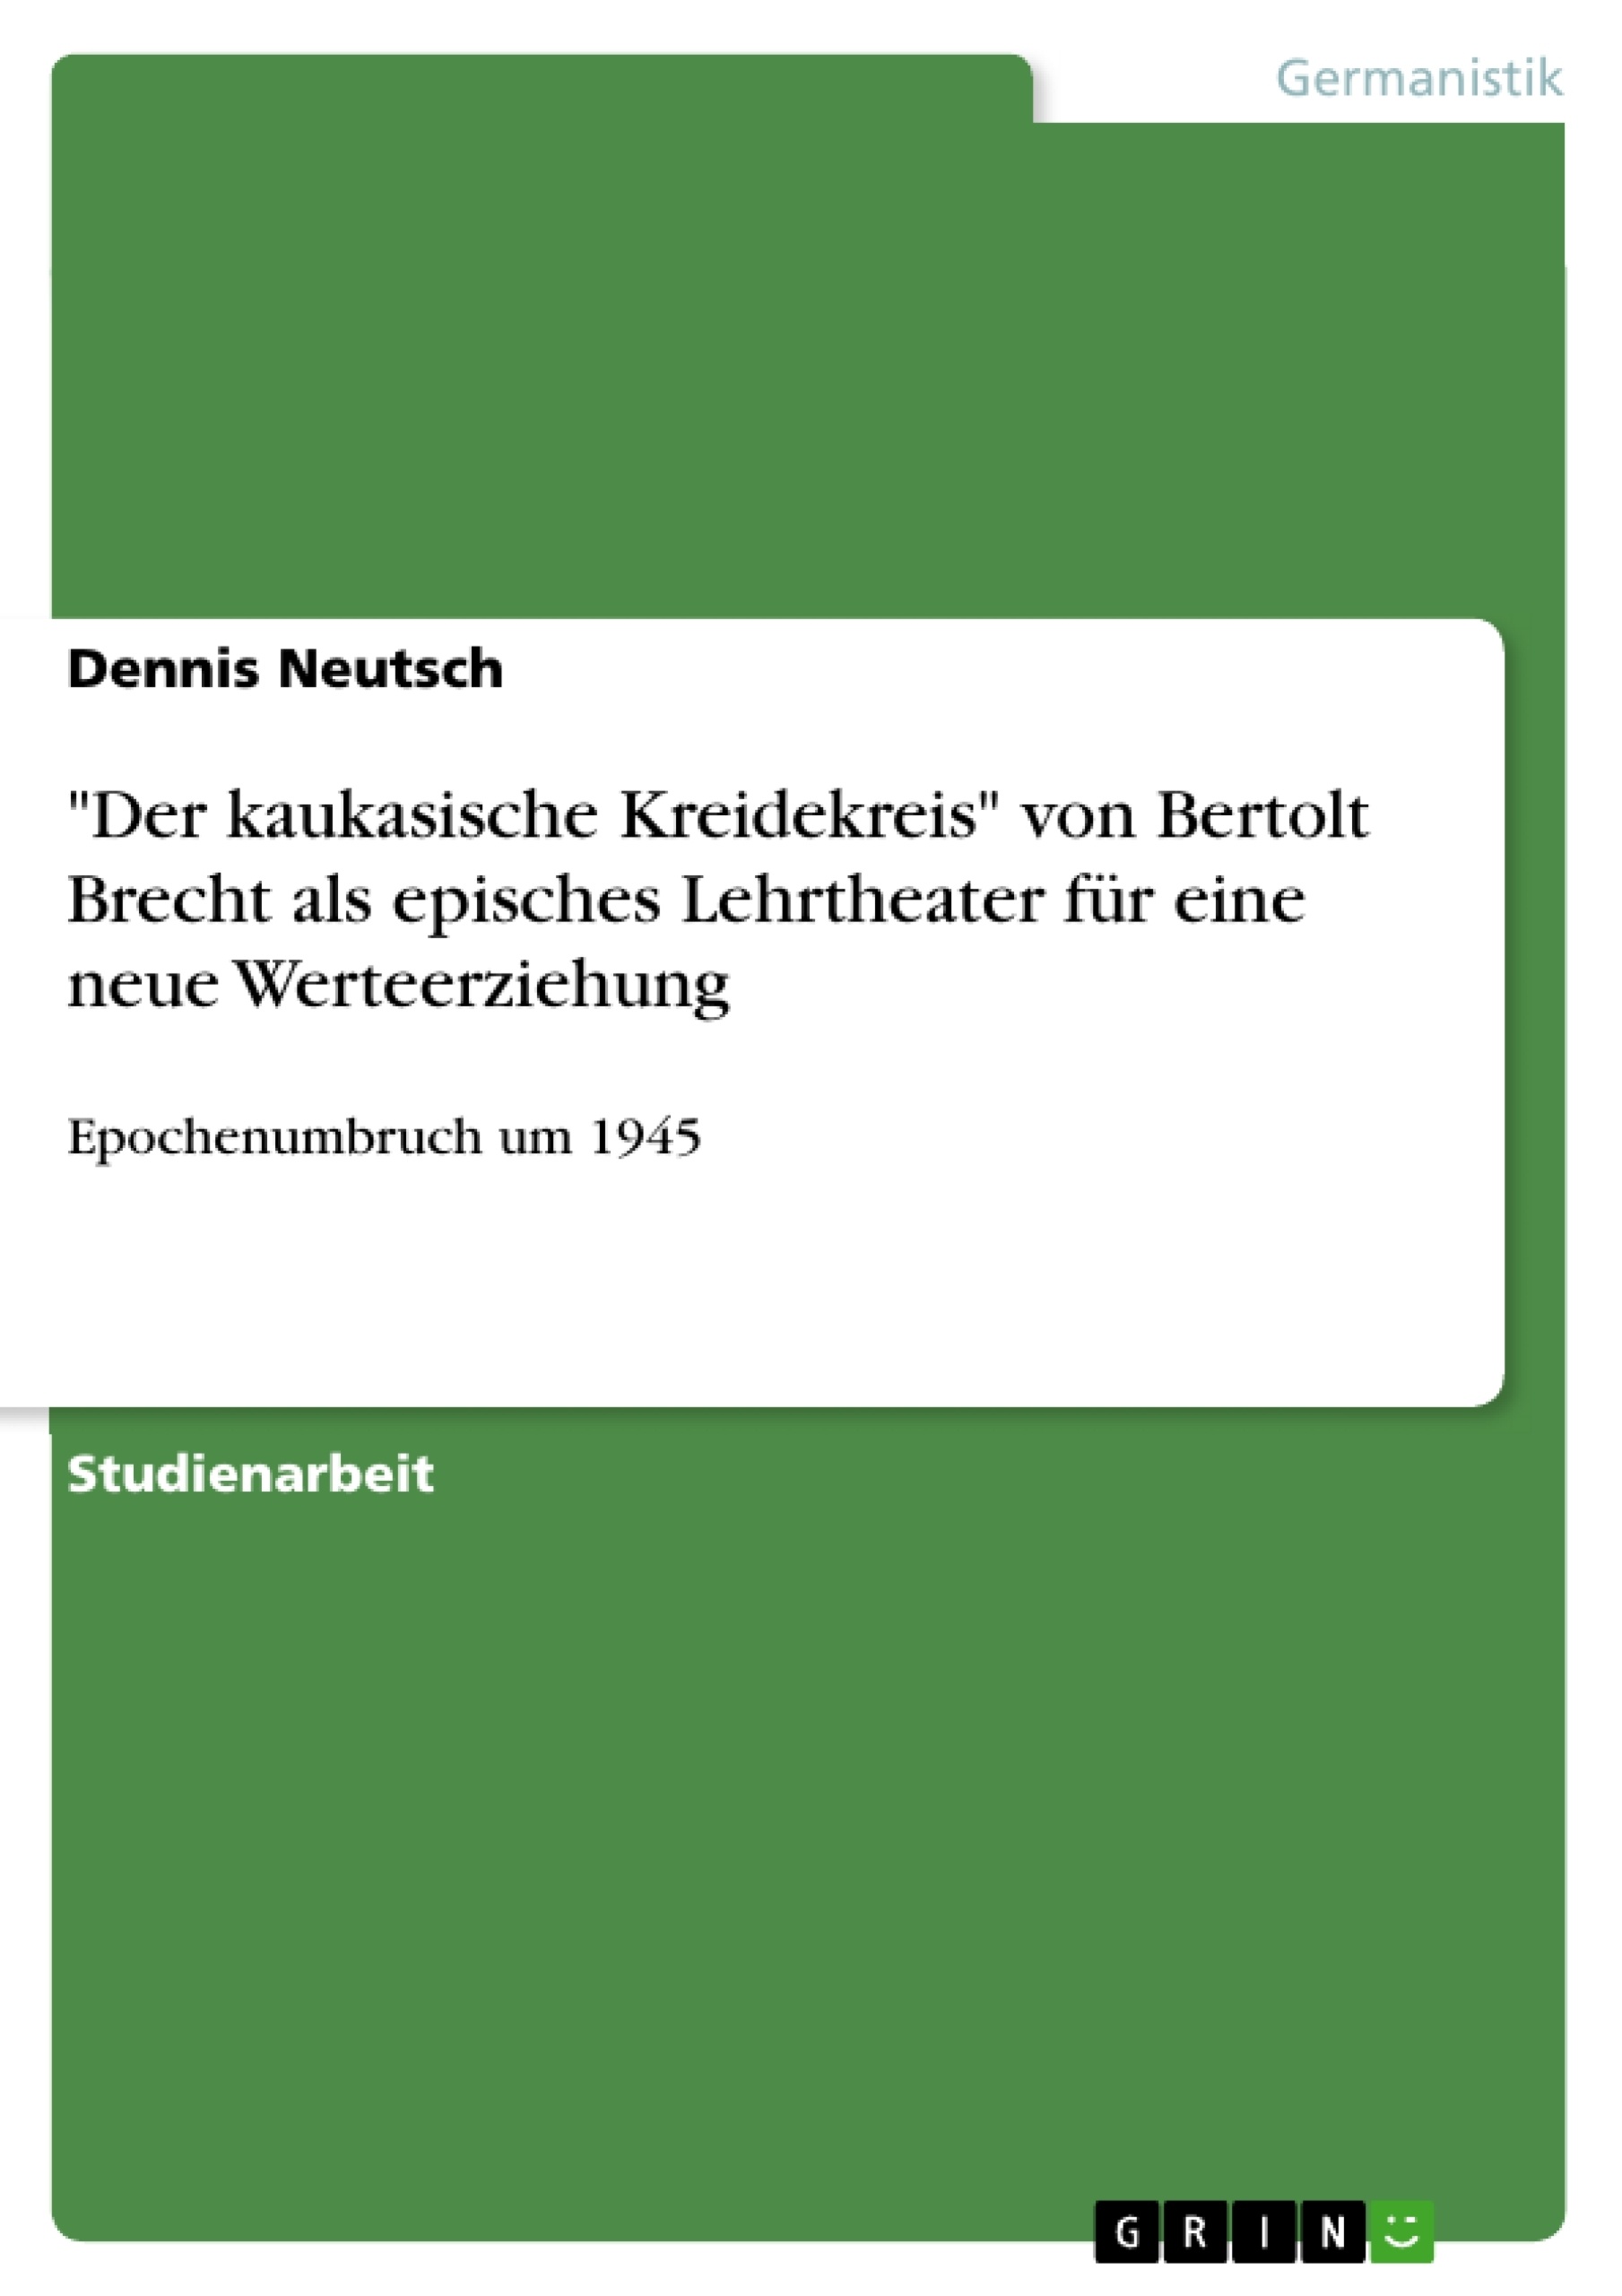 Titel: "Der kaukasische Kreidekreis" von Bertolt Brecht als episches Lehrtheater für eine neue Werteerziehung